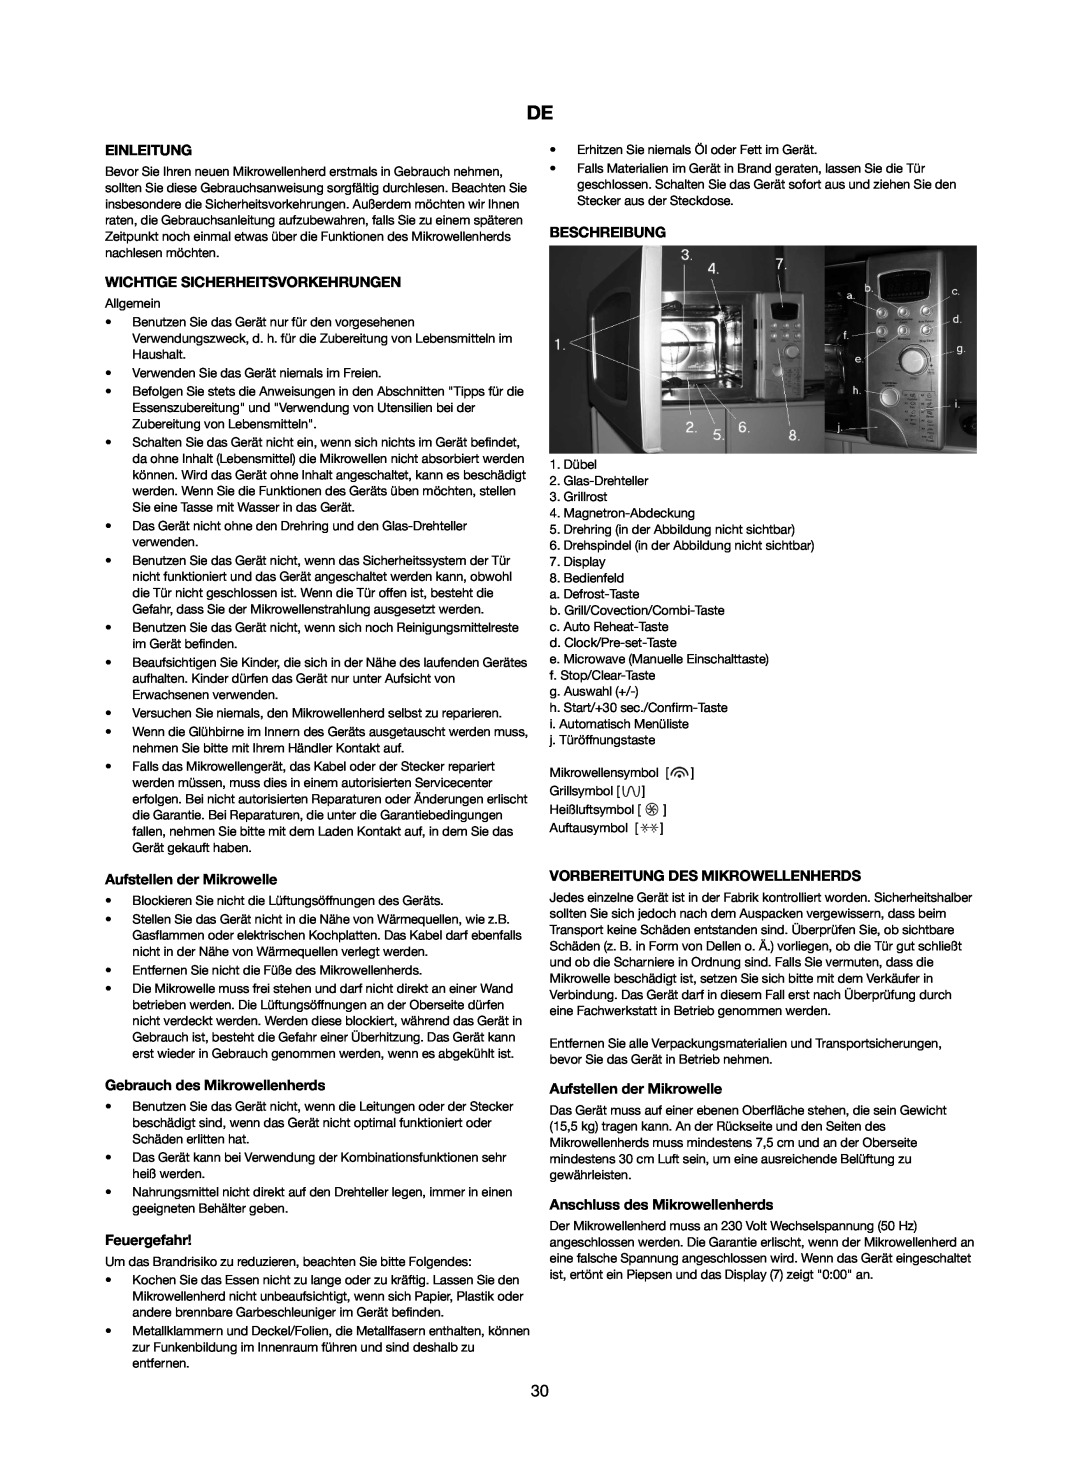 Melissa 253-012 manual Einleitung, Wichtige Sicherheitsvorkehrungen, Beschreibung, Aufstellen der Mikrowelle, Feuergefahr 